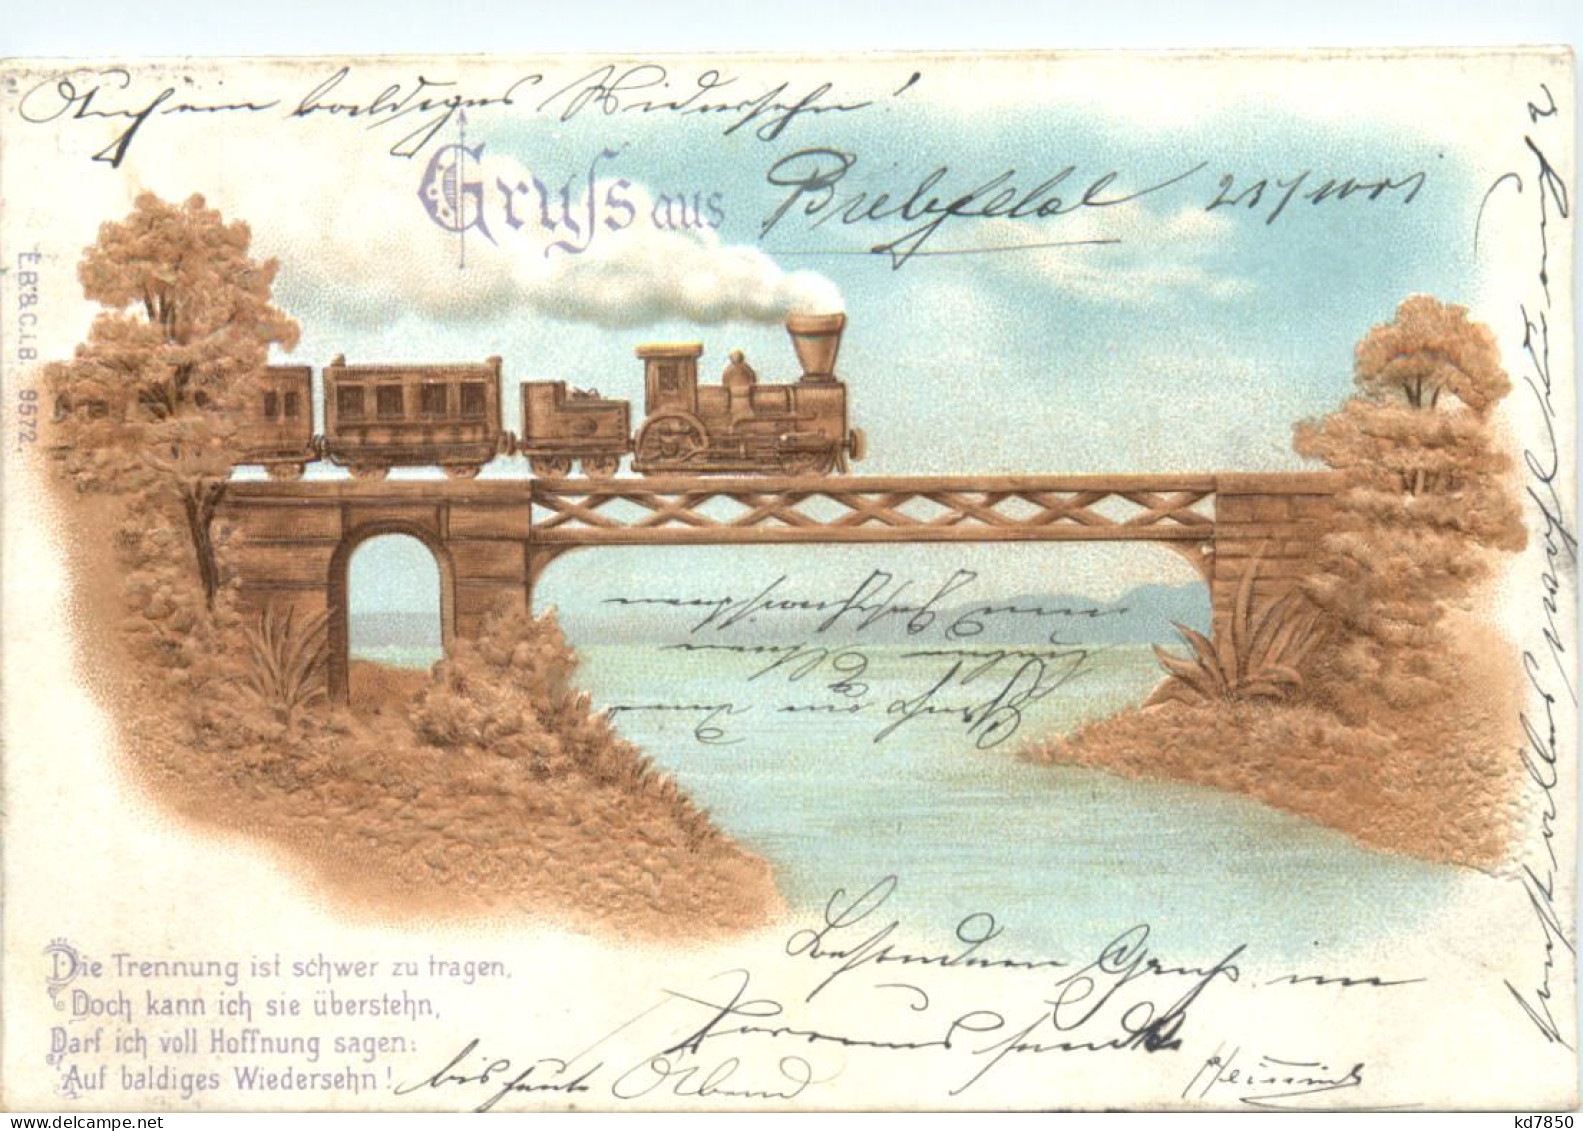 Gruss Aus - Prägekarte Eisenbahn - Greetings From...